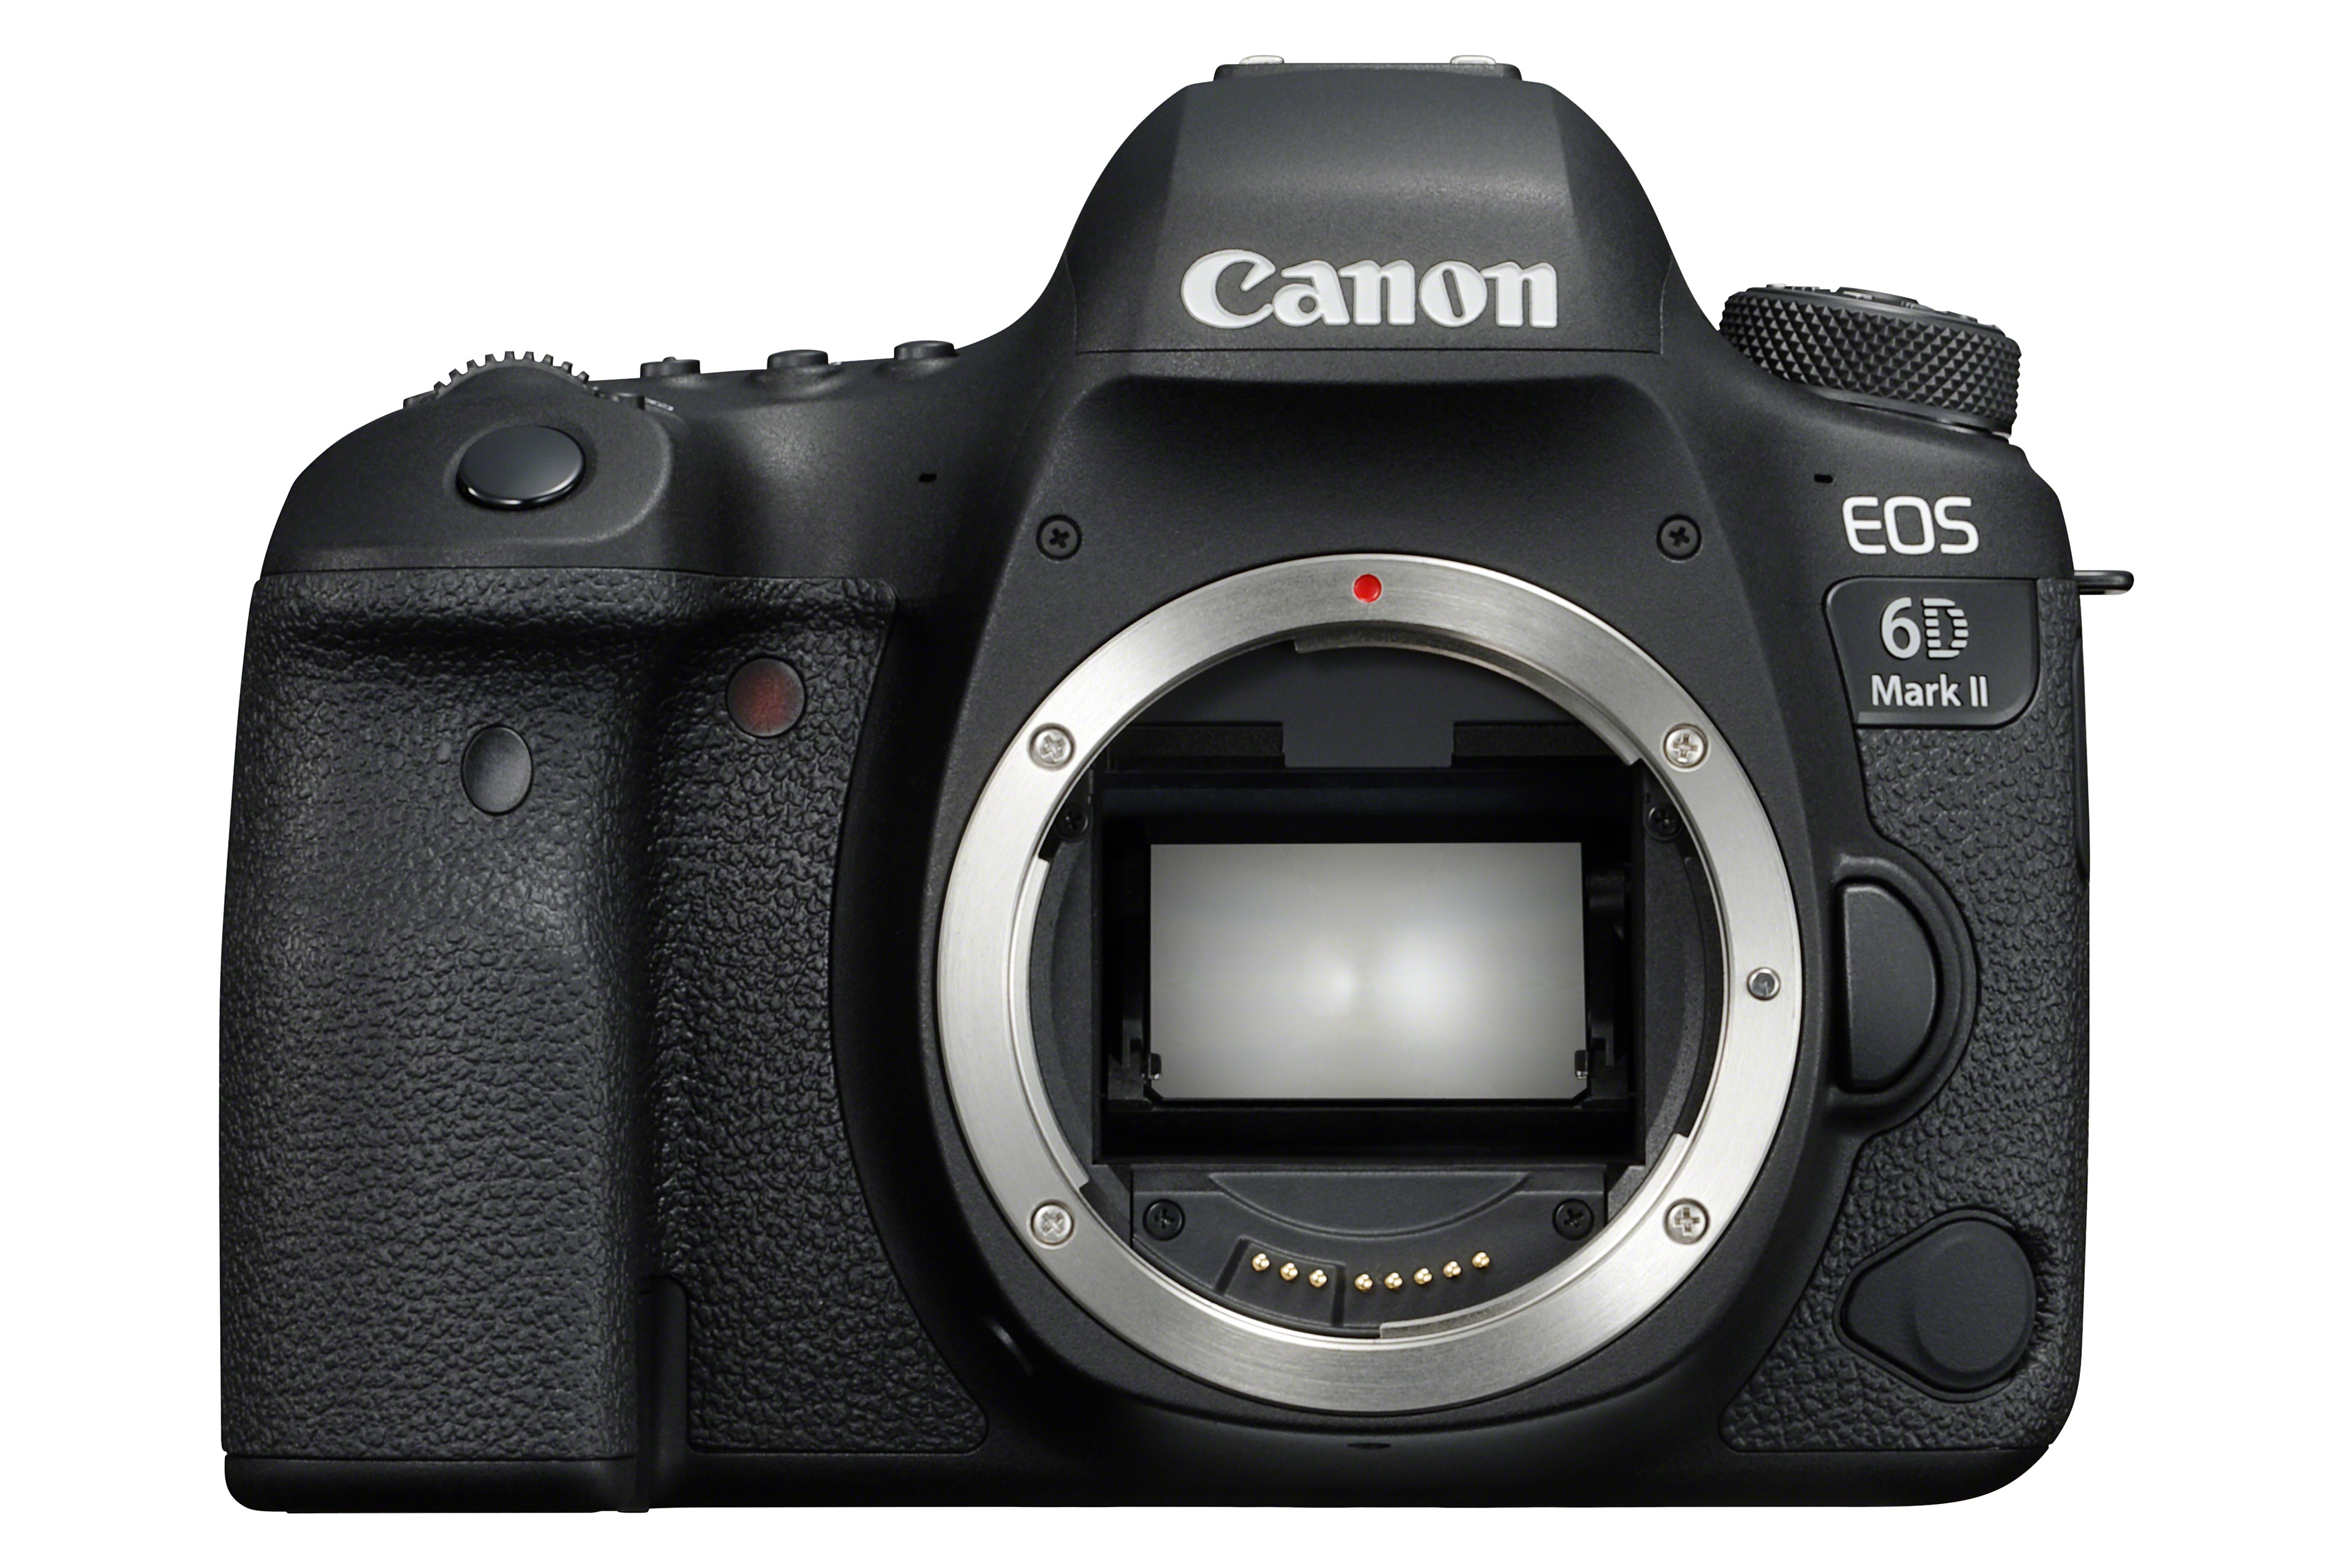 Mogelijk Bewustzijn Dierentuin Canon EOS 6D Mark II Sensor Reviews: Great color and ISO performance